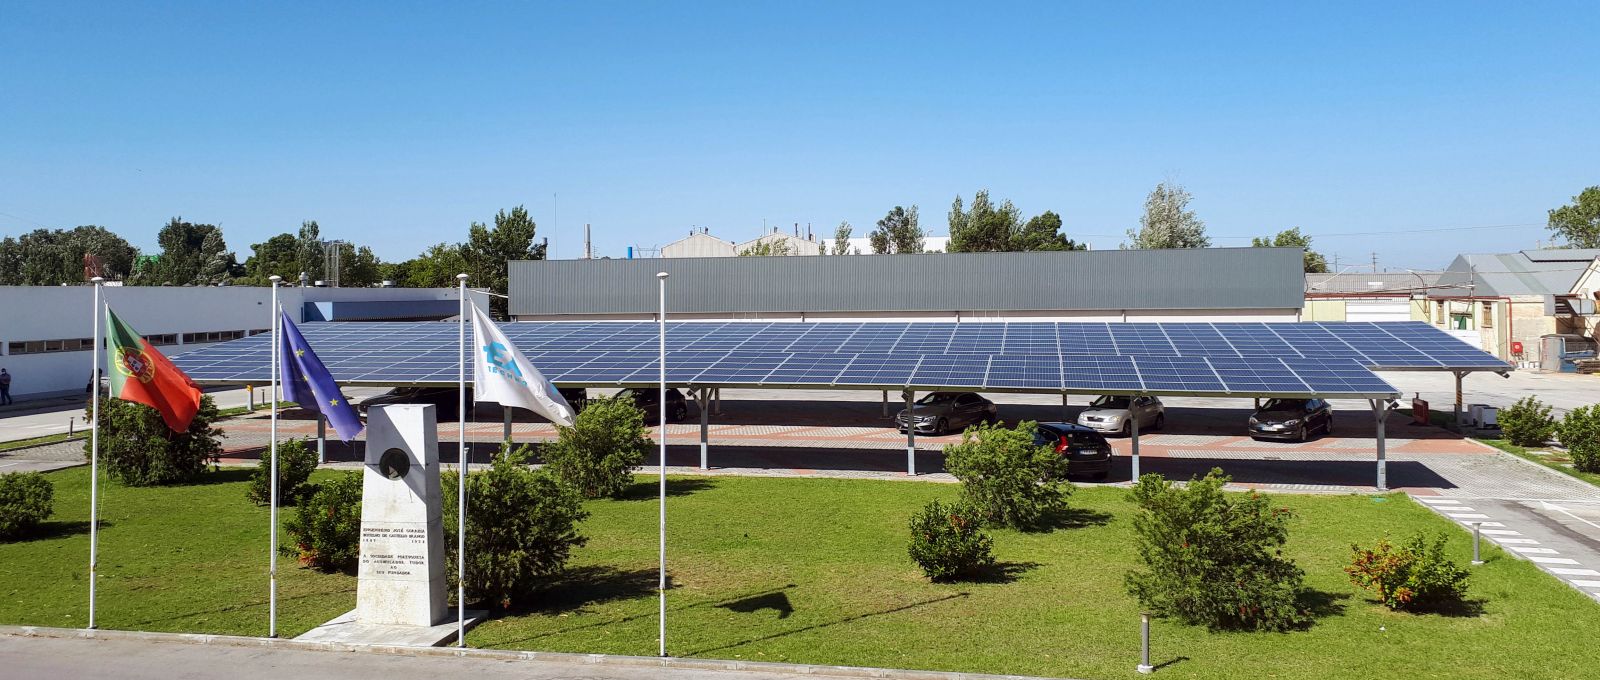 Da Exide Technologies  un impianto a energia solare e un sistema di accumulo a batteria